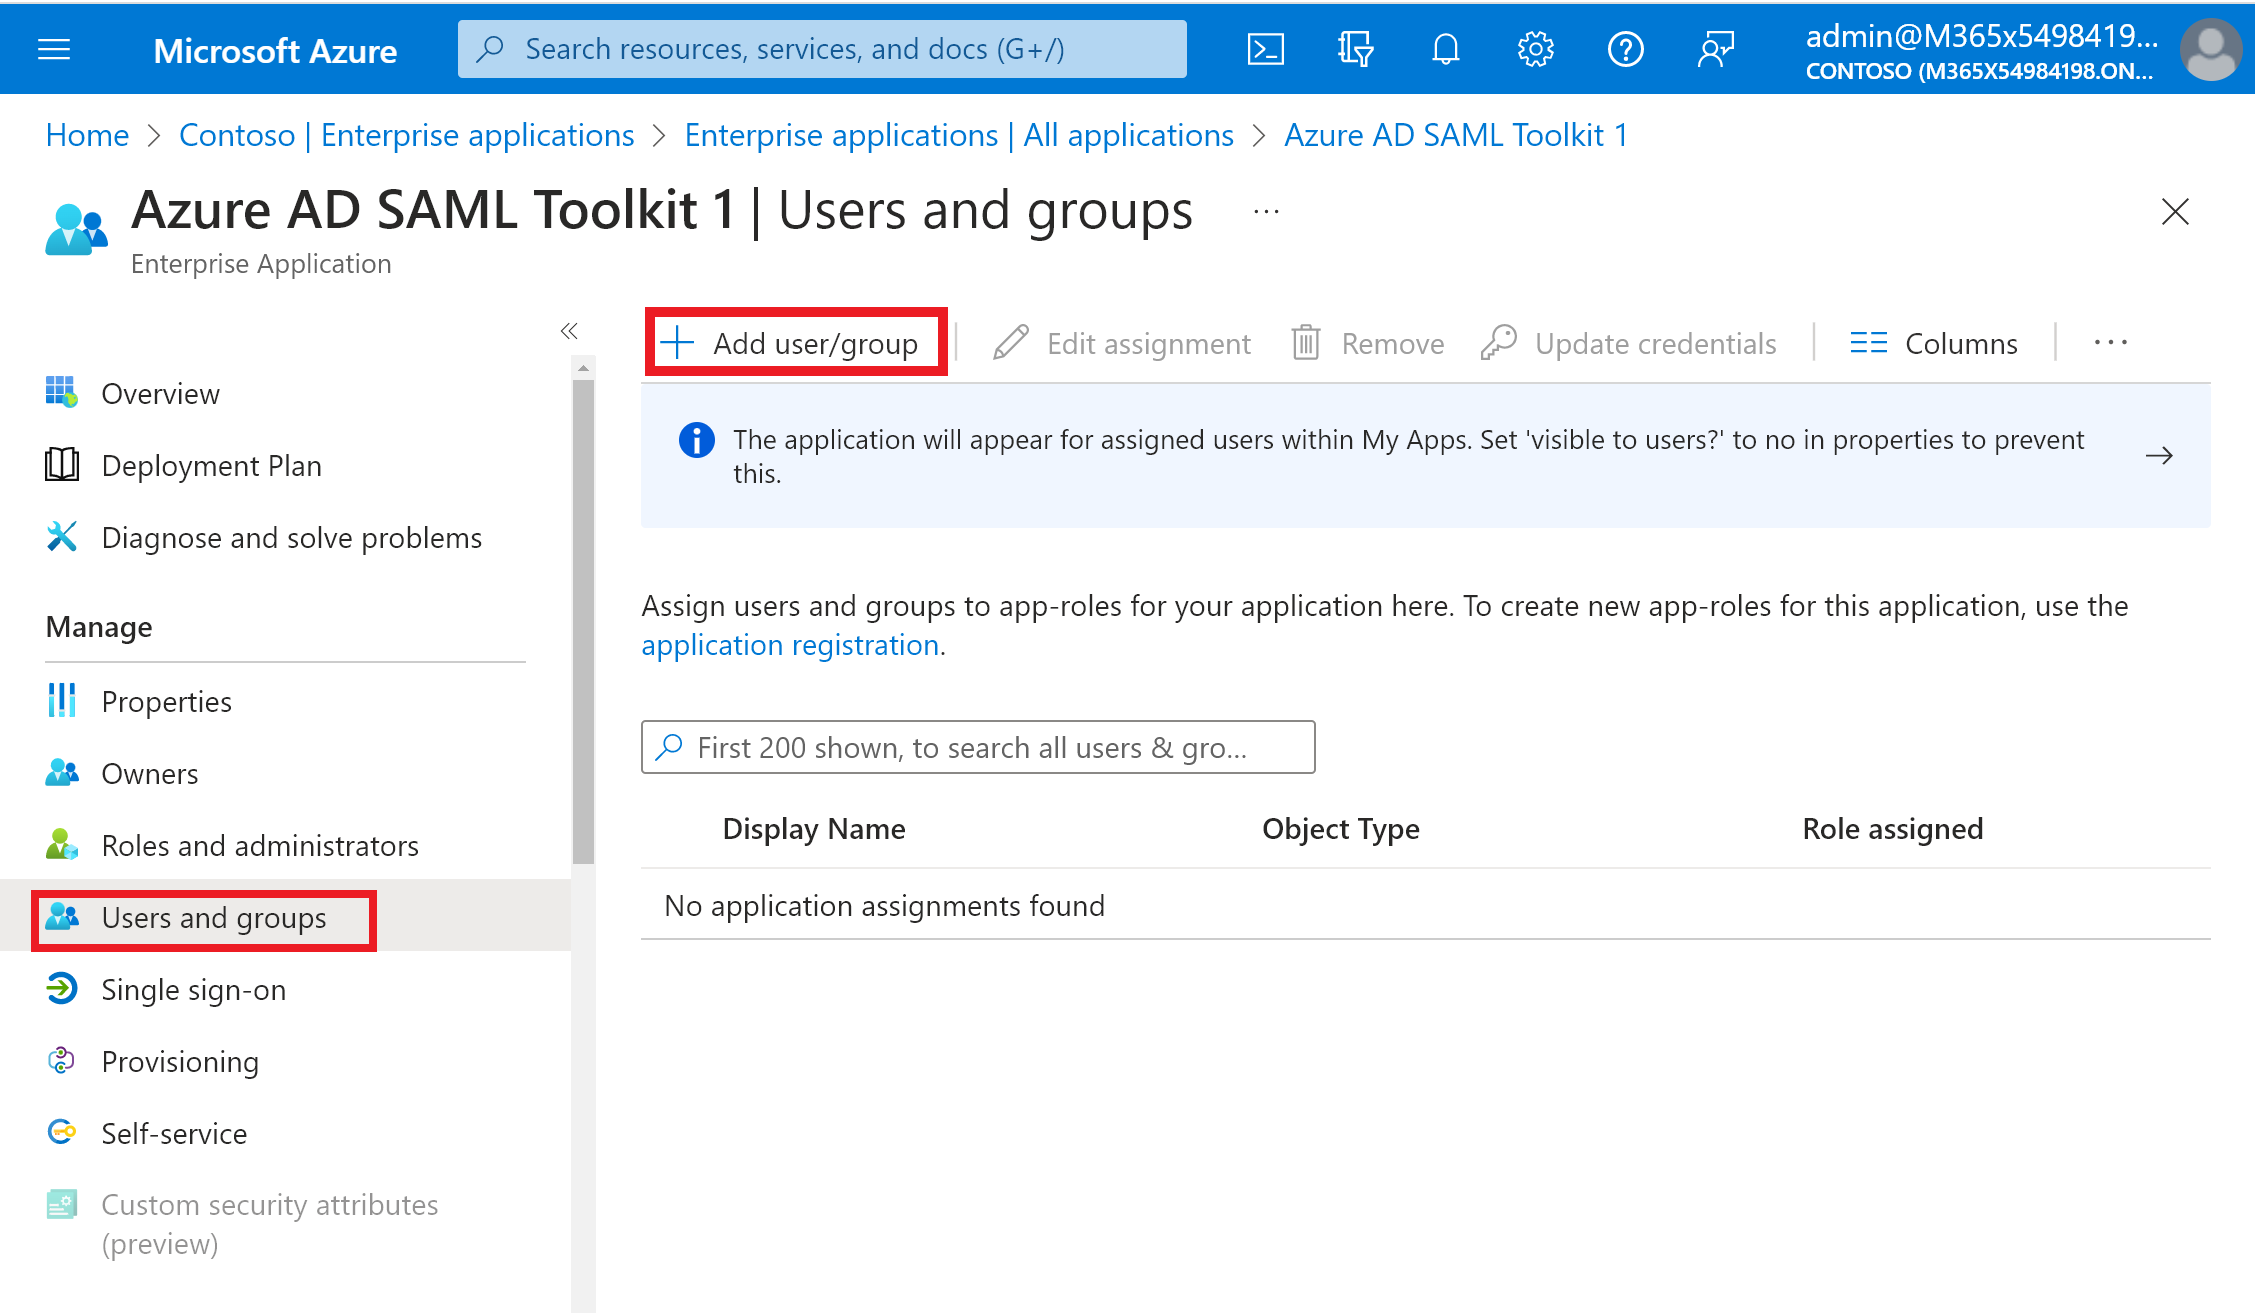 Assegnare un account utente a un'applicazione nel tenant di Microsoft Entra.